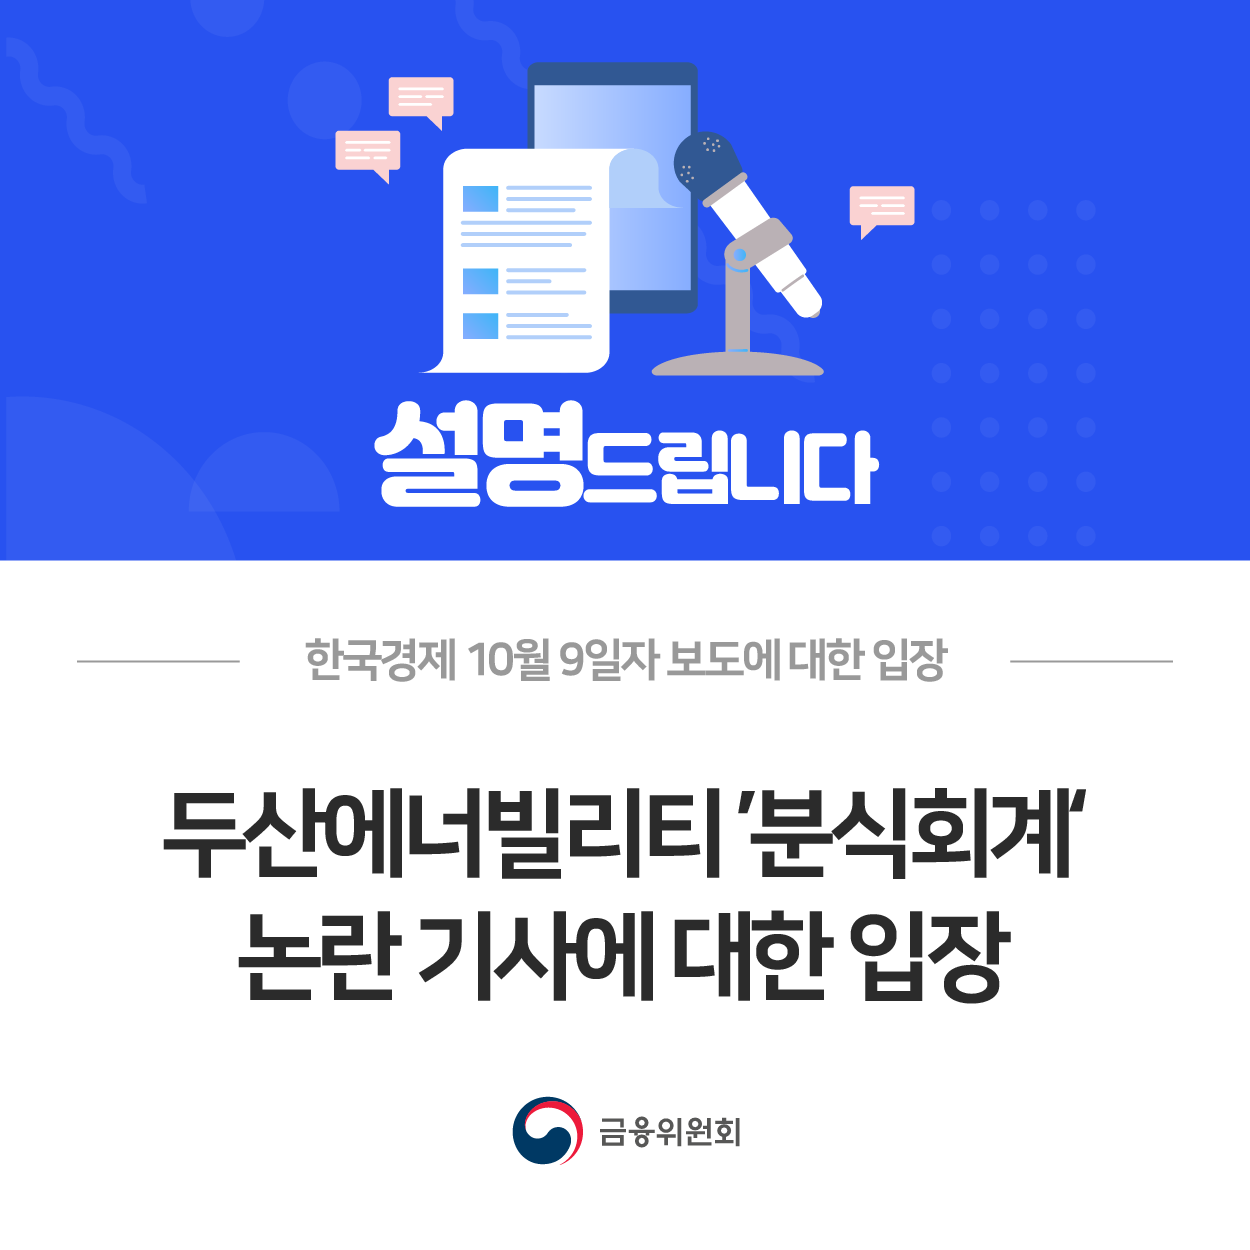 한국경제 10월 9일자 보도에 대한 입장. 두산에너빌리티 '분식회계' 논란 기사에 대한 입장